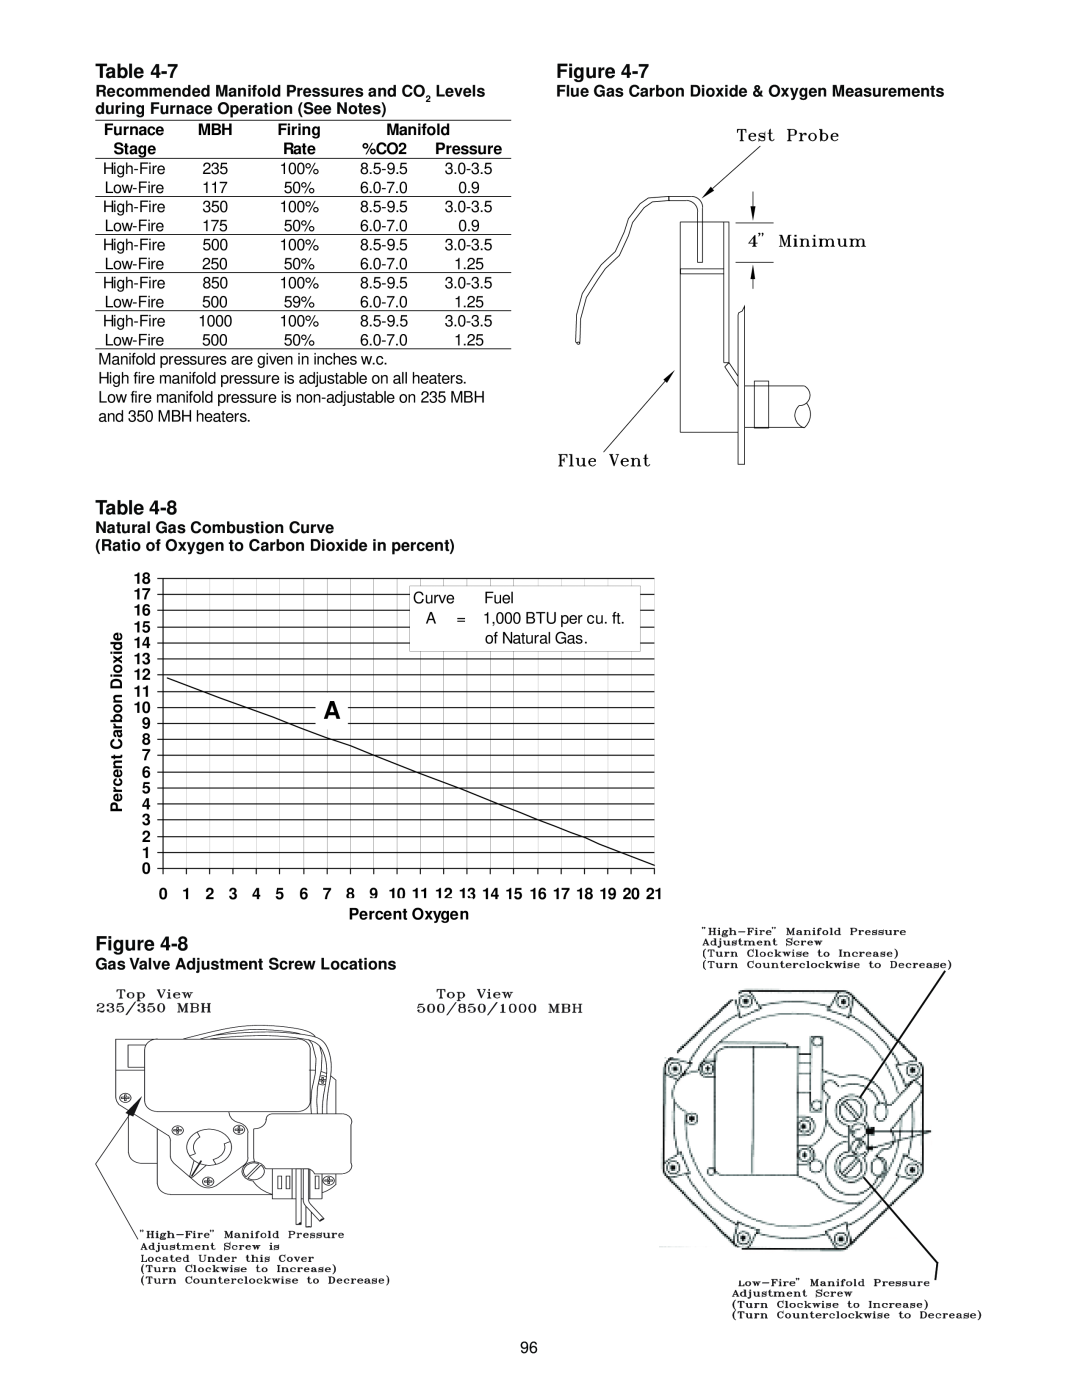 Trane RT-SVX10C-EN specifications Figure 